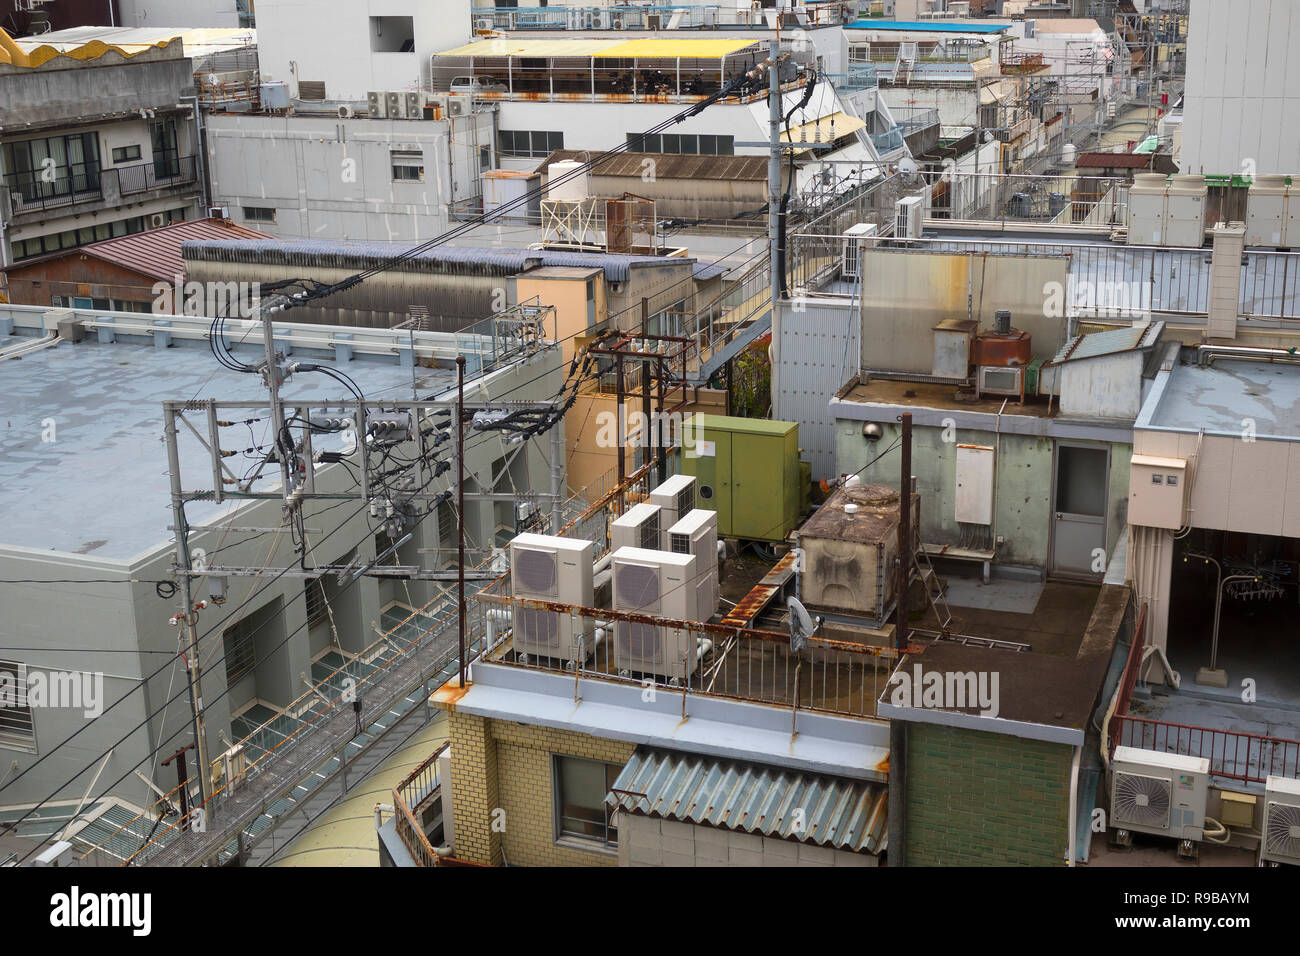 Nagasaki, Giappone - 23 Ottobre 2018: vista sopra i tetti delle case con aria condizionata cassette, watertanks e connessioni elettriche Foto Stock